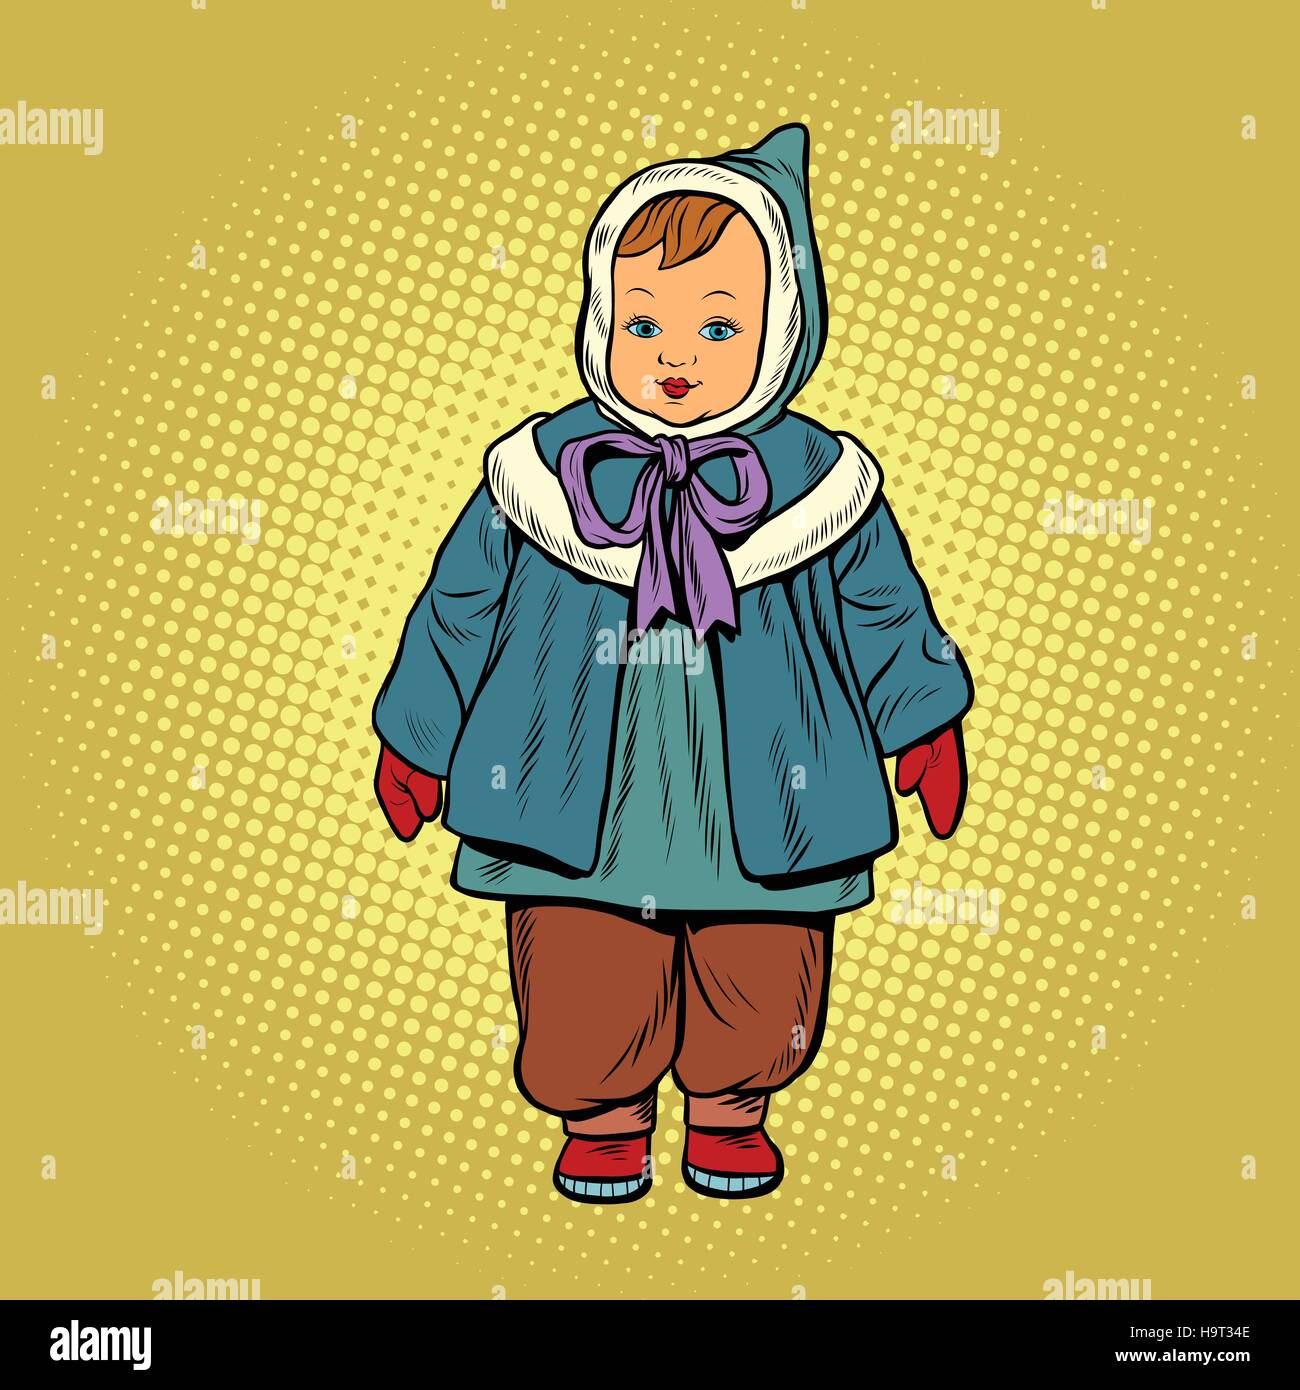 Kleinkind Retro Kleidung Puppe, Pop-Art-Vektor-Illustration. Kindheit und Mode Stock Vektor